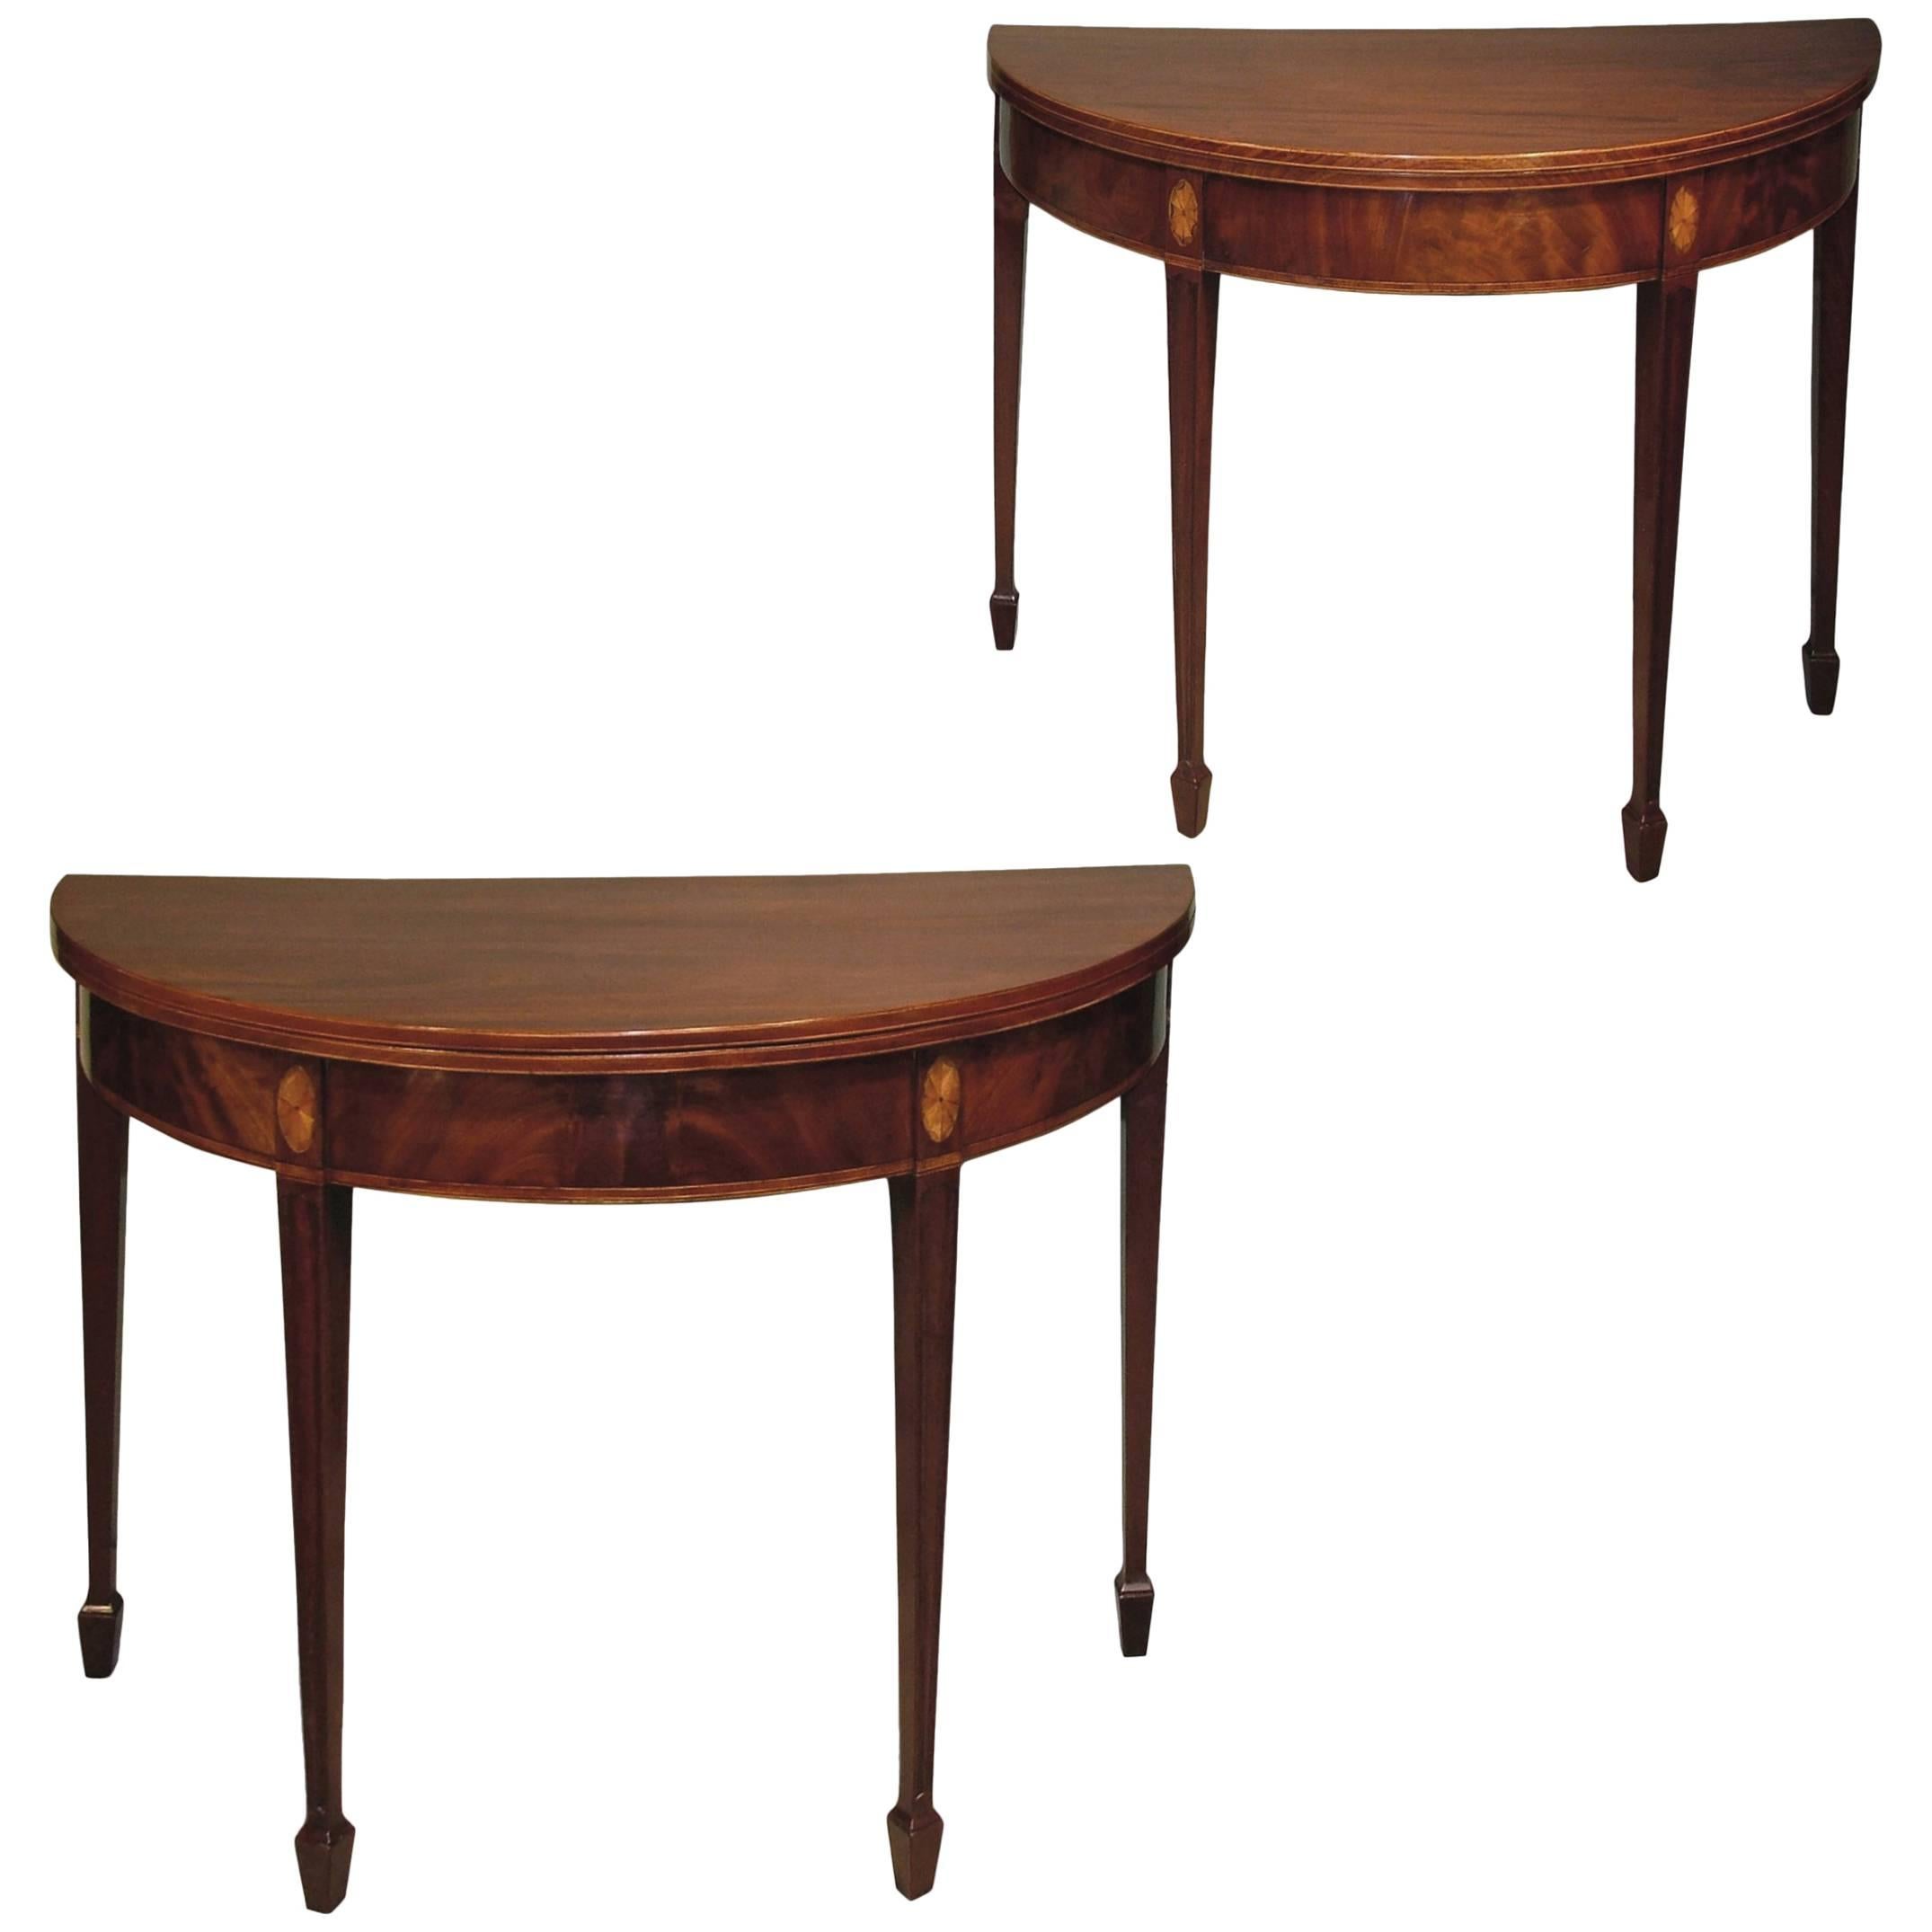 18th Century half-round mahogany tea tables